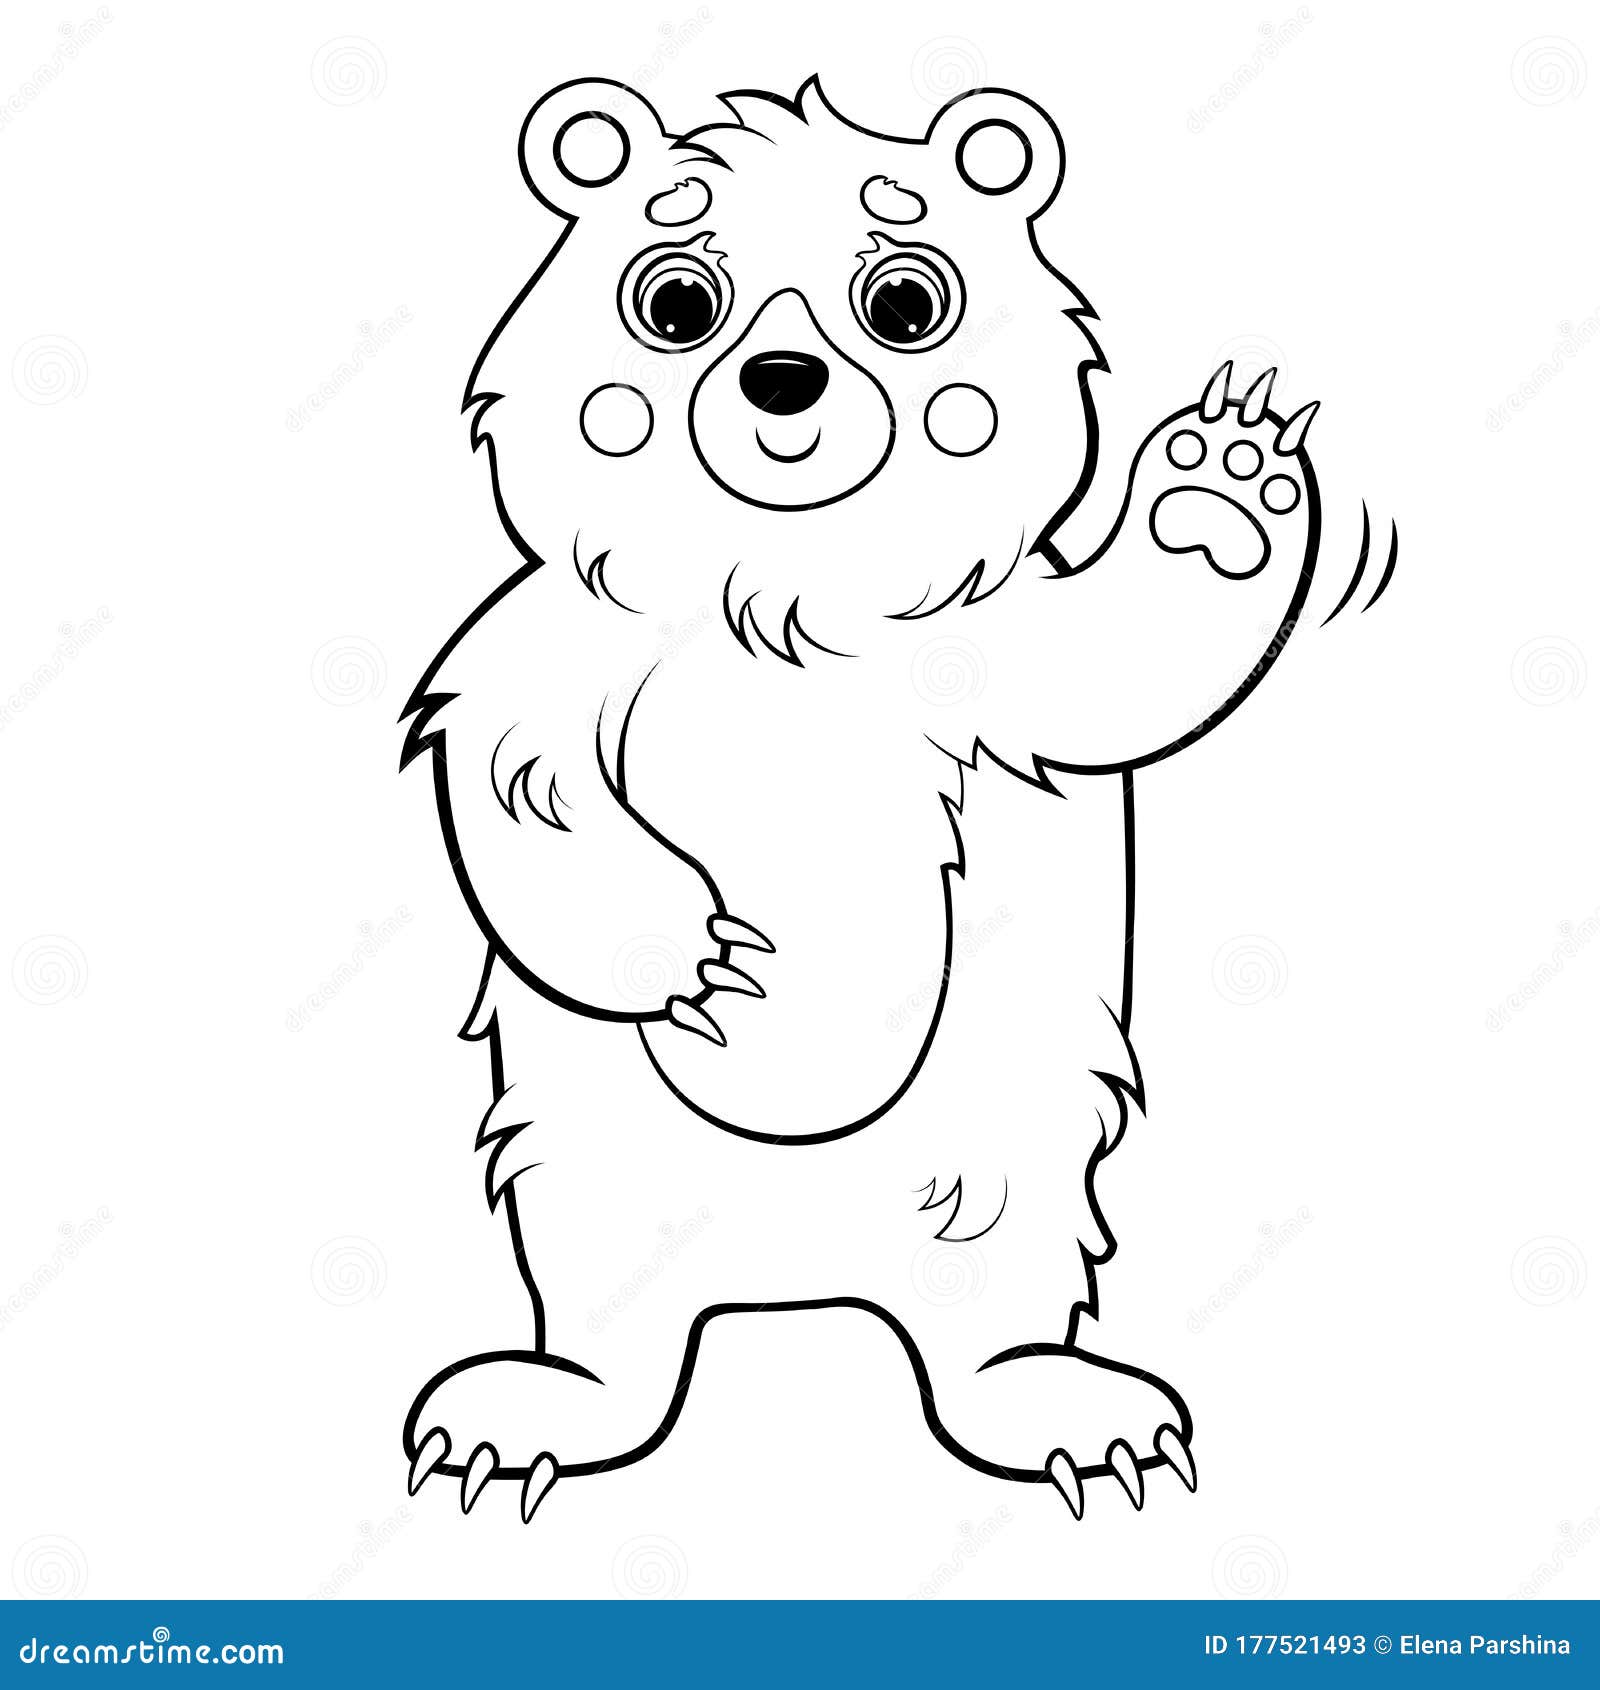 Description of Как нарисовать Машу ее друзей и Медведя раскраска для детей